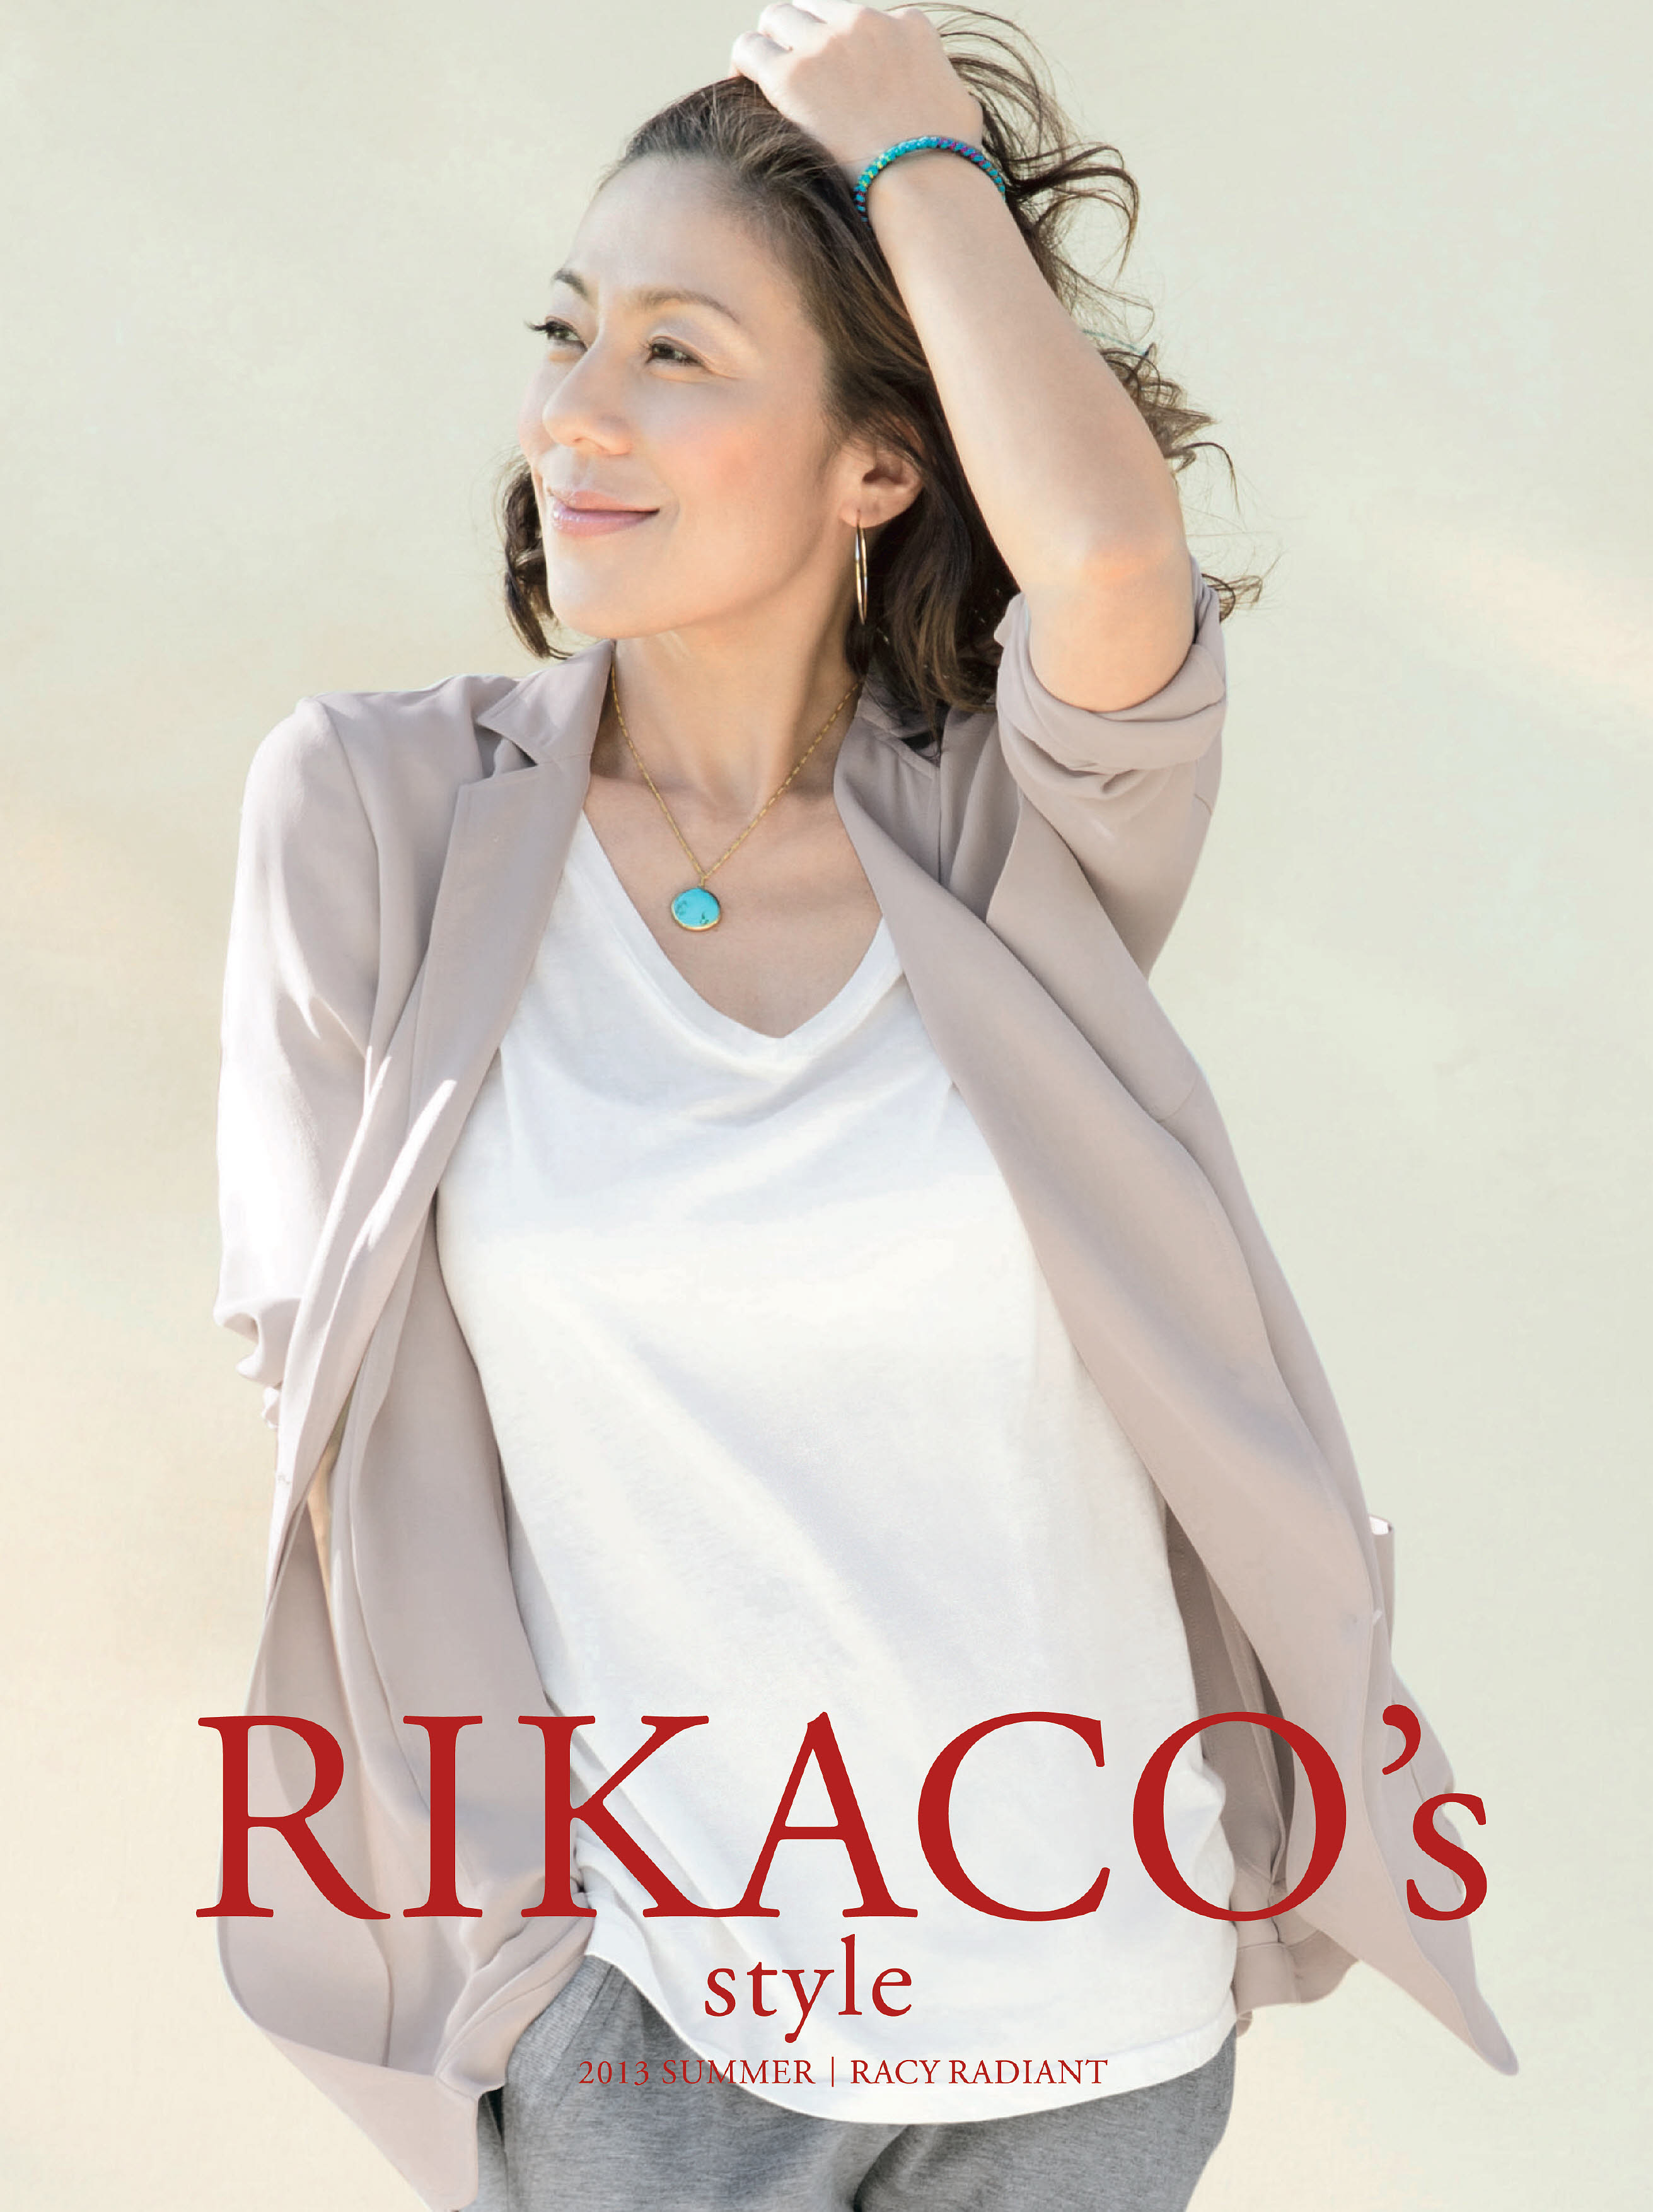 RIKACOプロデュースの2013夏向けファッション、絶好調 等身大のRIKACOの魅力とこだわりを形にした大人の